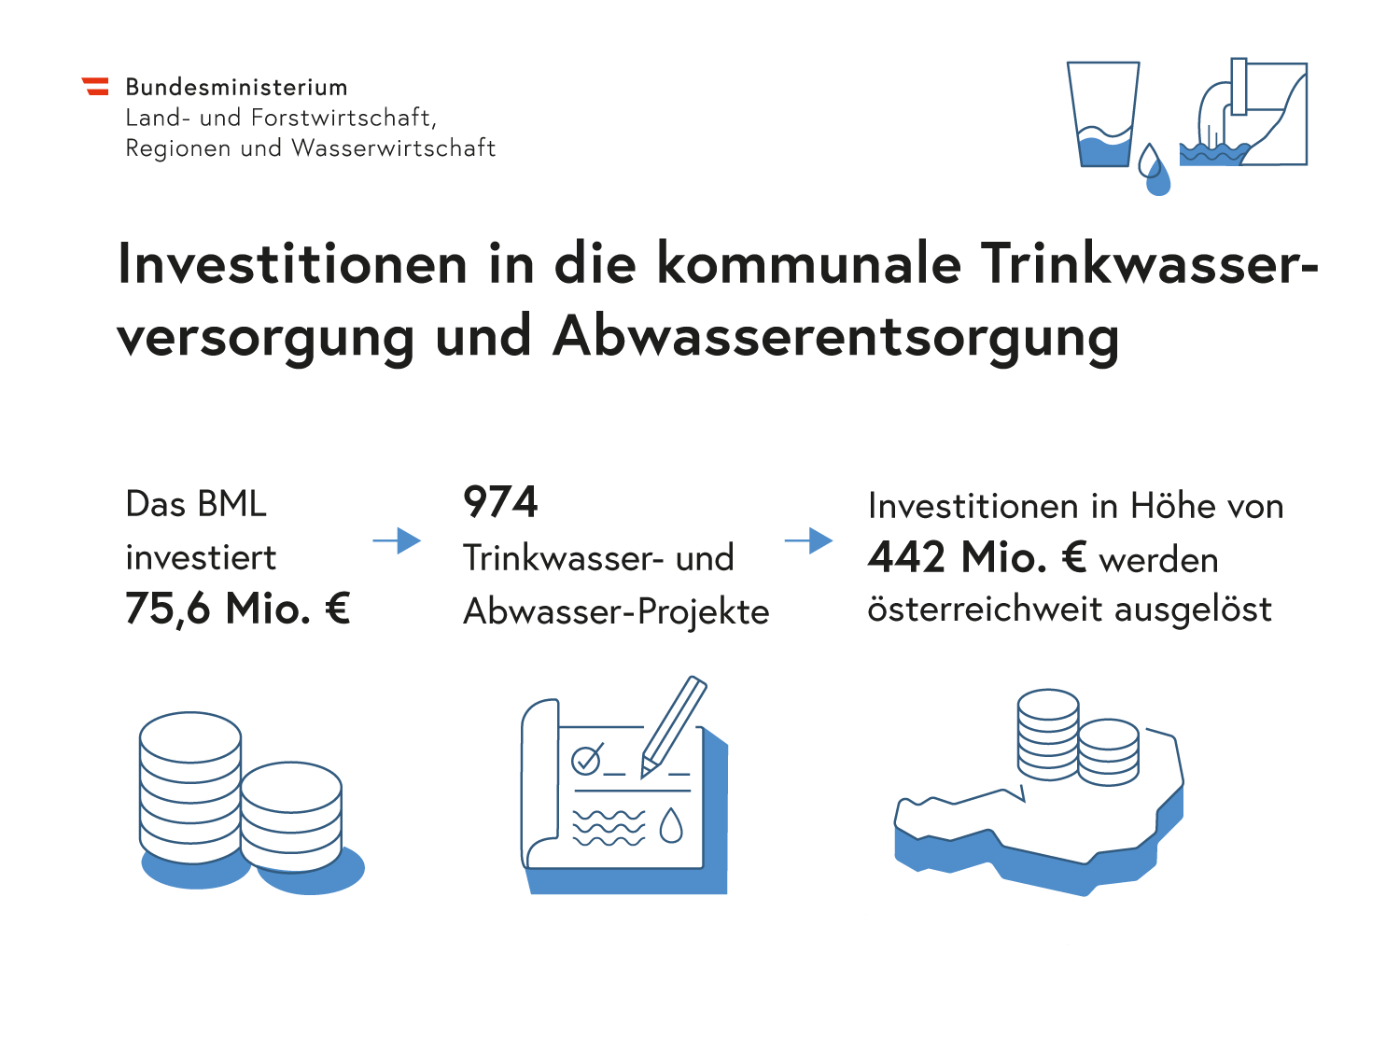 Darstellung in Zahlen, Worten und Abbildungen der Investitionen Trinkwasser und Abwasser